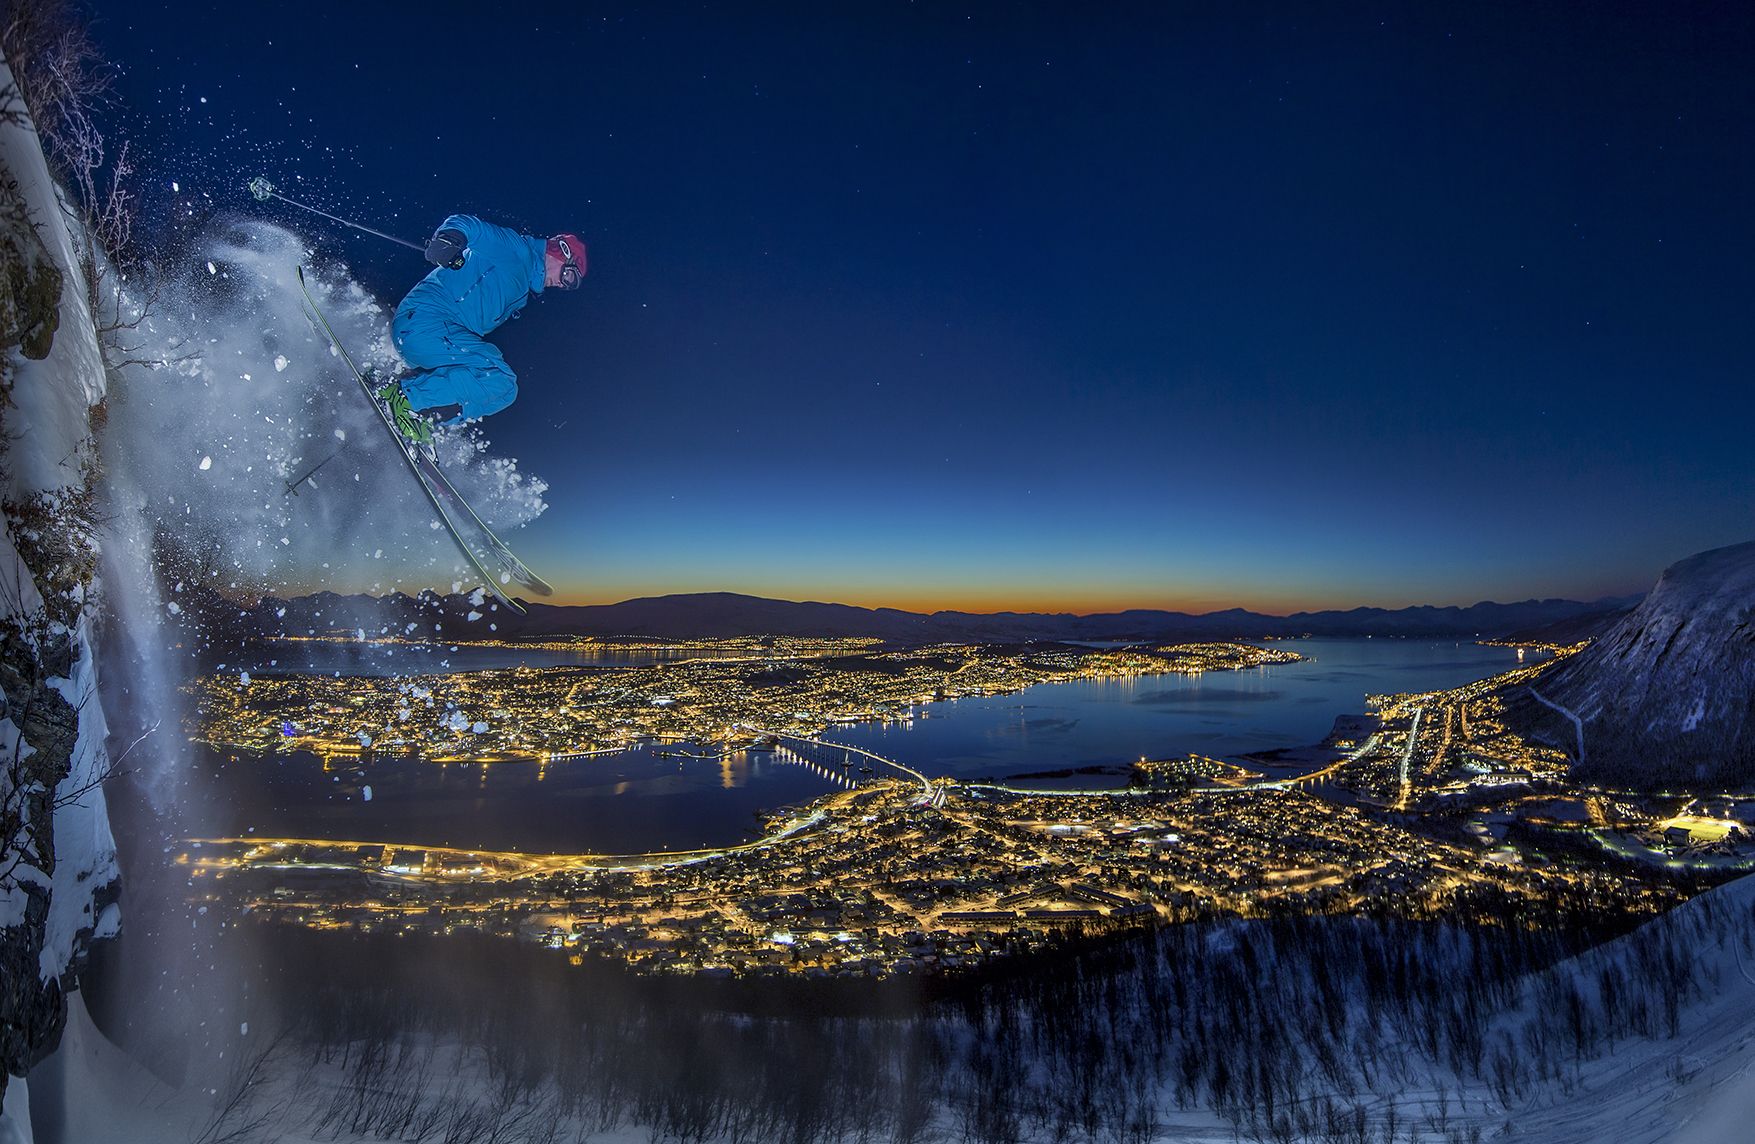 Giải nhất hạng mục Ảnh thể thao thuộc về tay máy Audun Rikardsen (Na Uy), ghi lại cảnh một người trượt thực hiện một chú nhảy từ vách núi trong màn đêm.